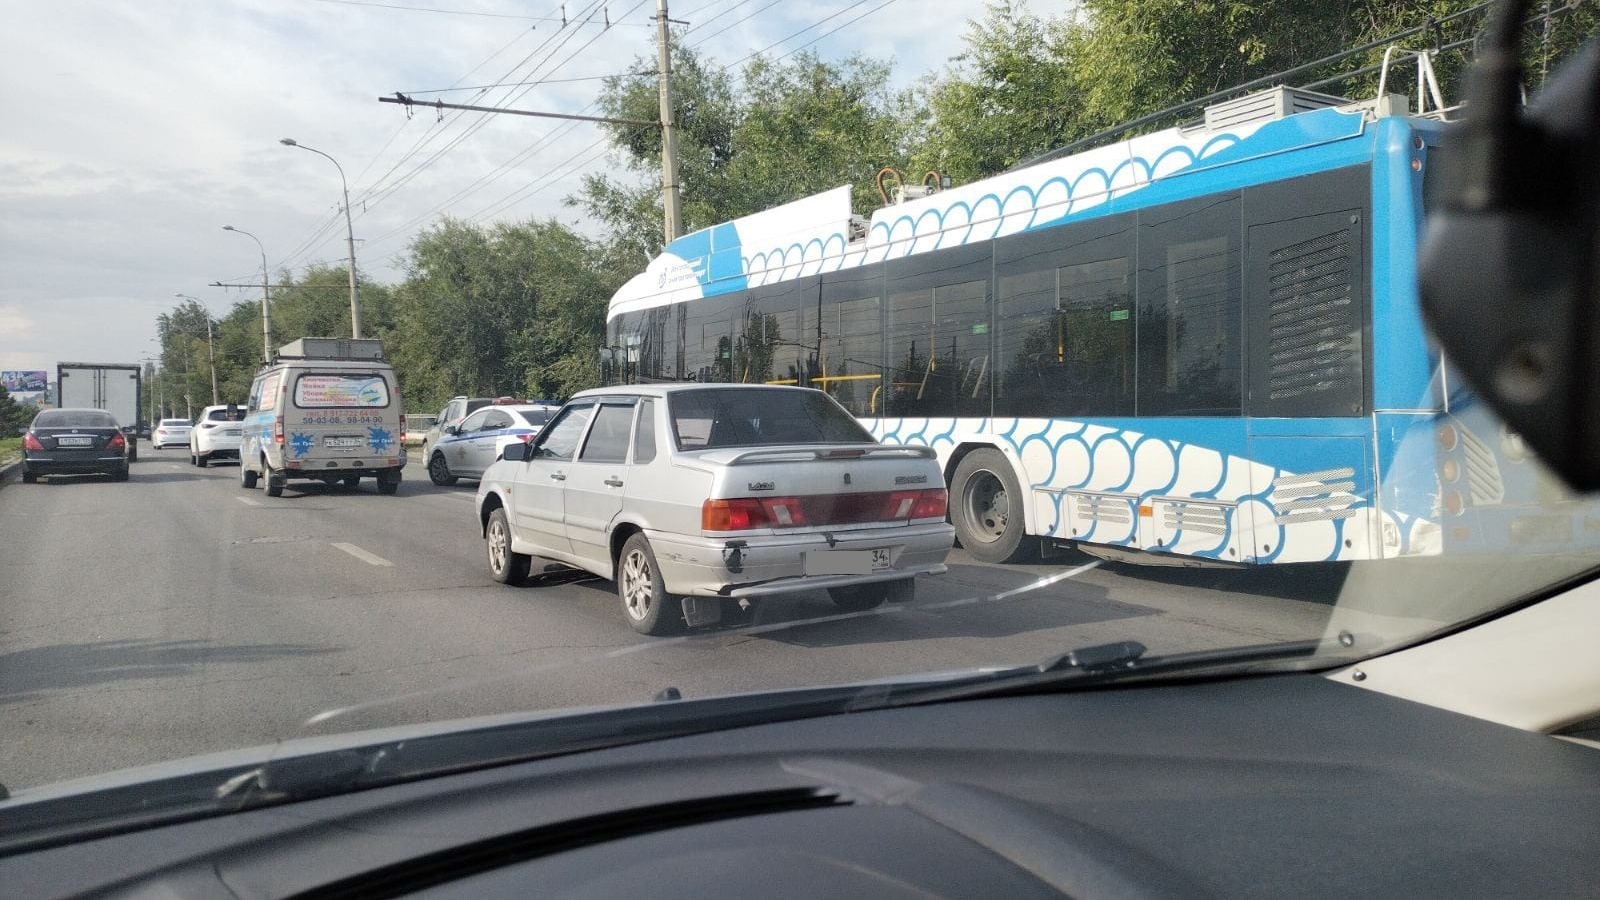 ДТП с троллейбусом, иномаркой и грузовиком попало на видео в Волгограде